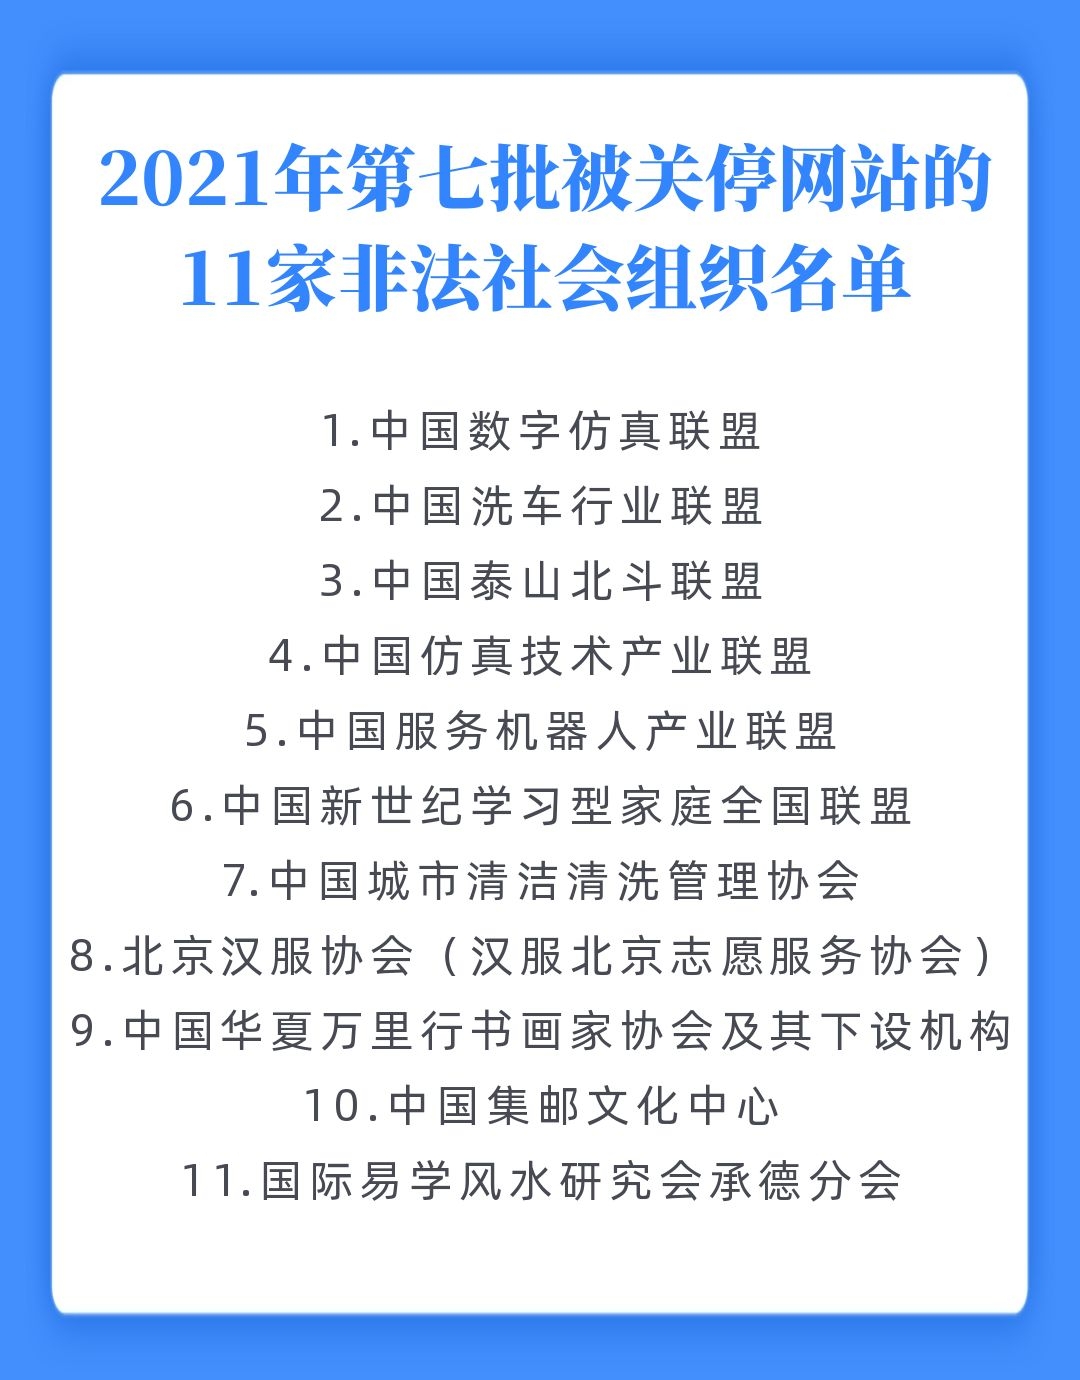 “中国集邮文化中心”“中国洗车行业联盟”等11家非法社会组织网站被依法关停